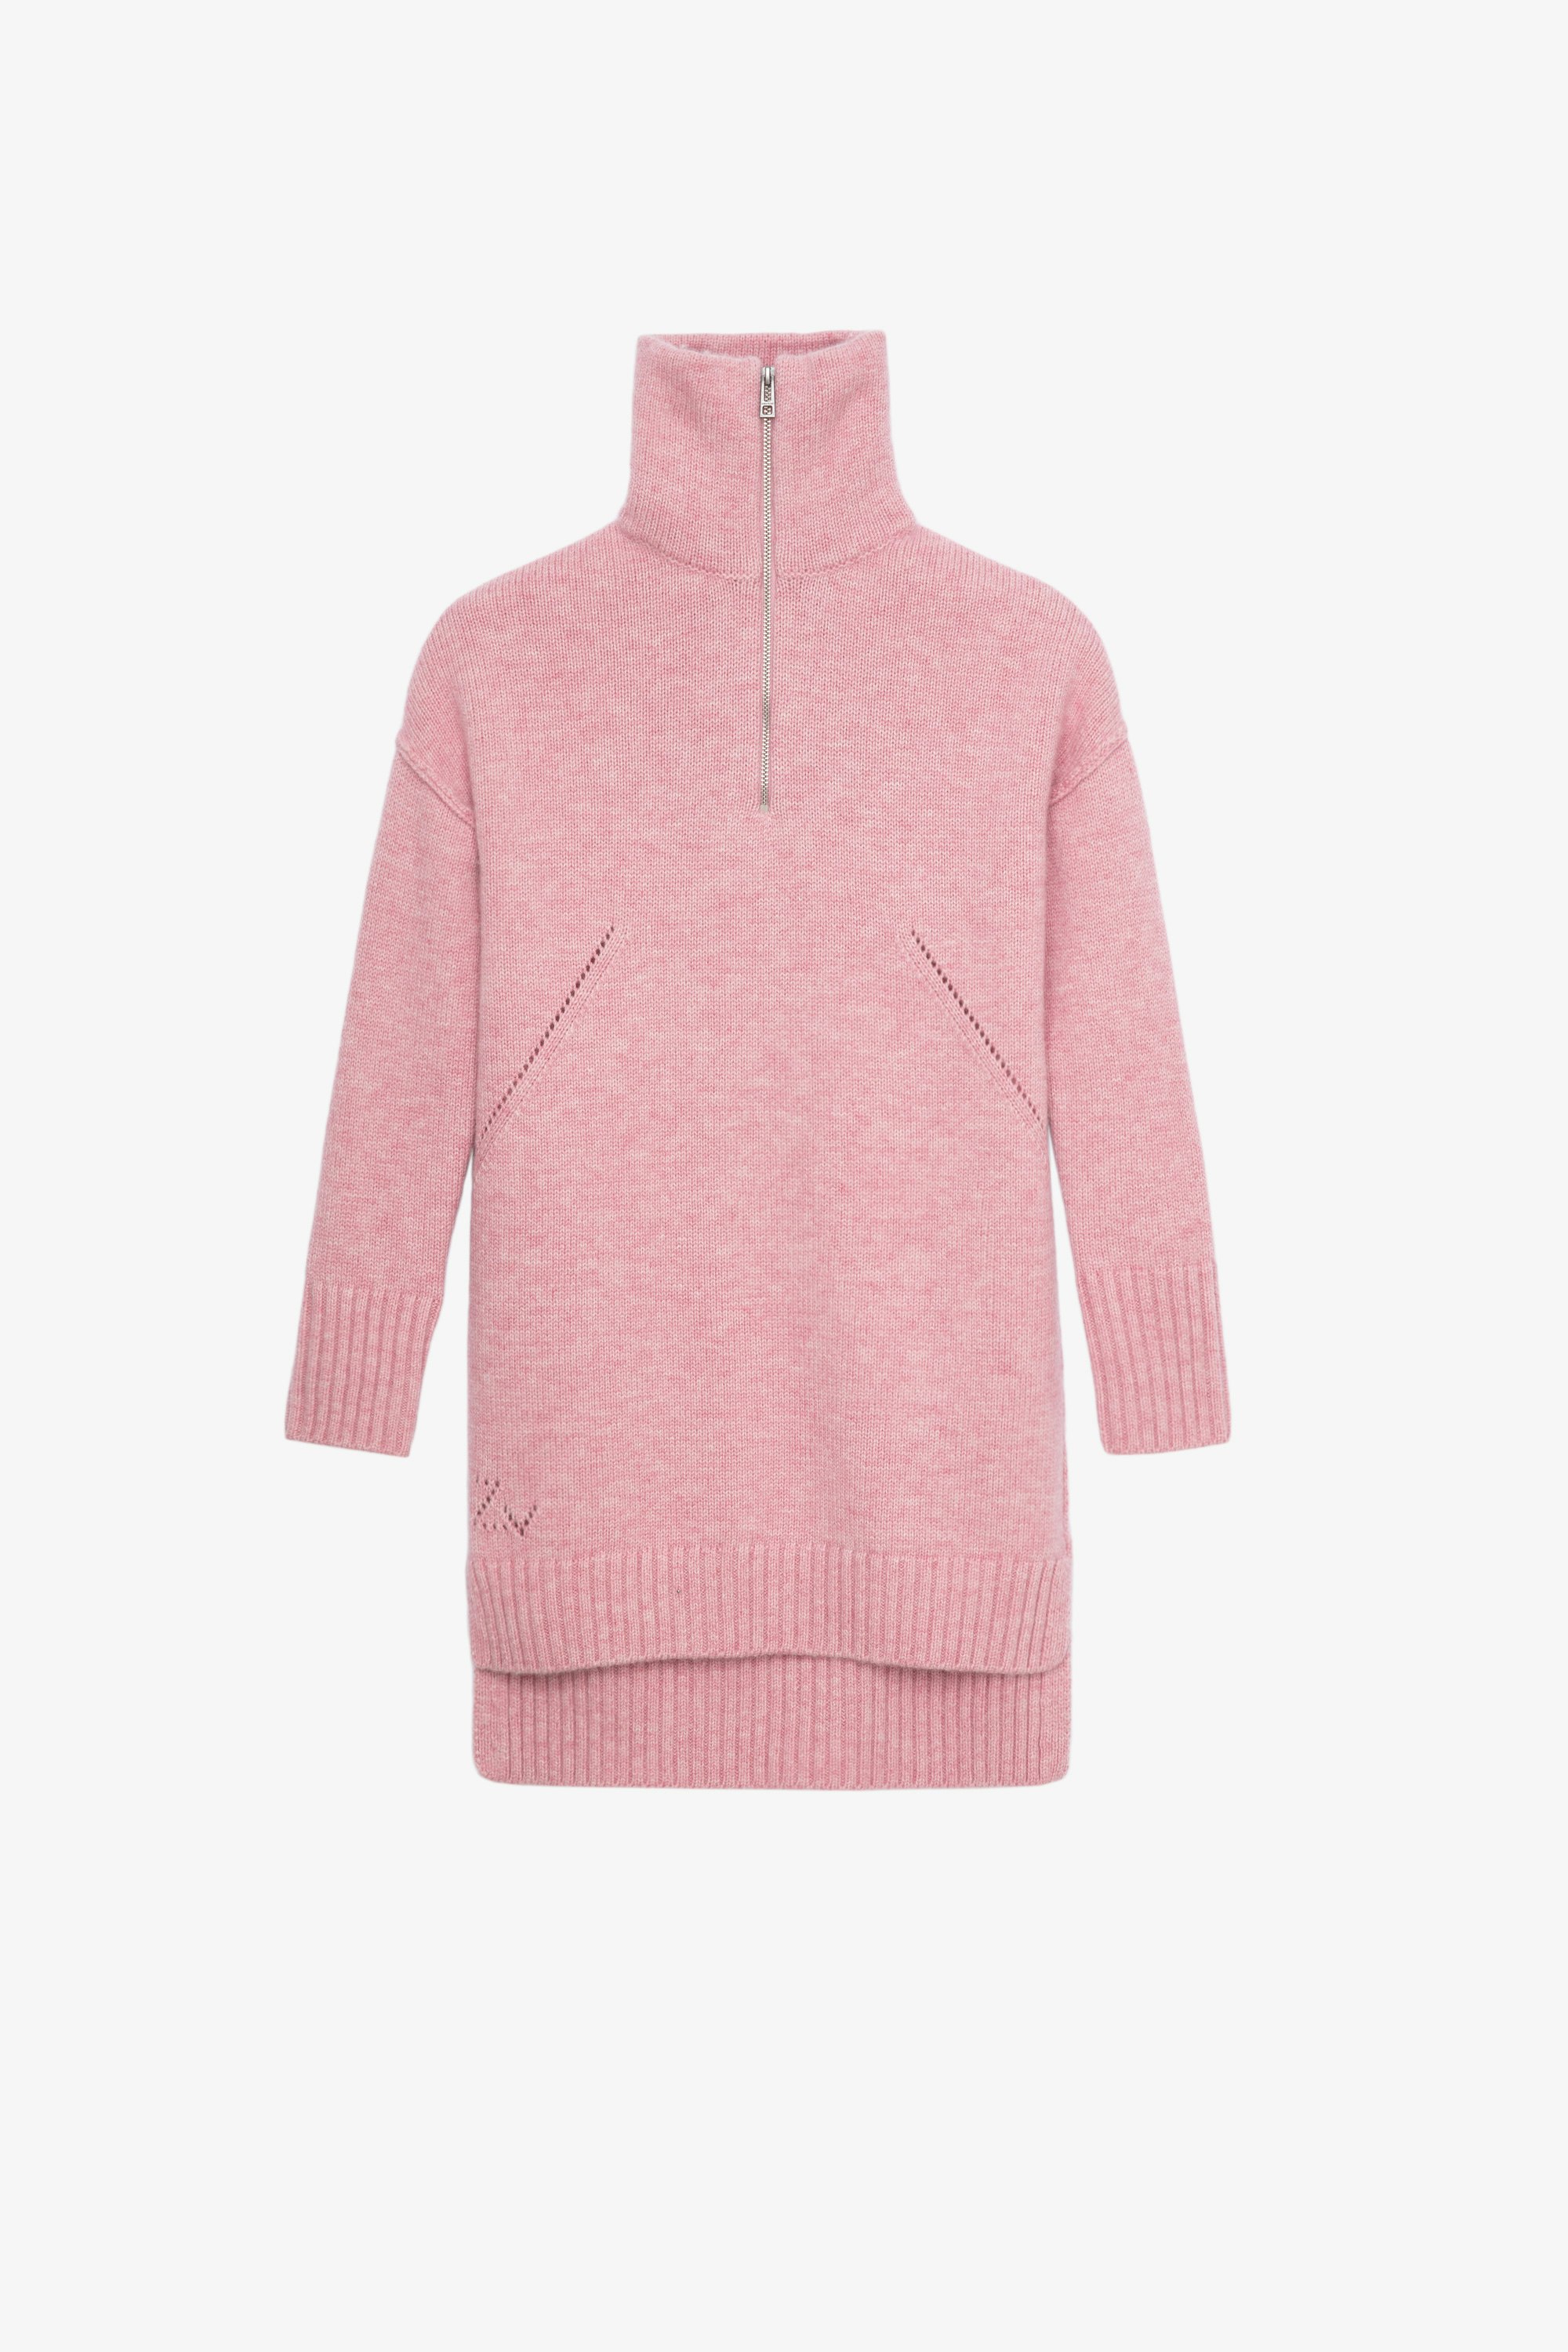 Milene Children’s Dress Children’s pink long-sleeve knitted sweater dress 